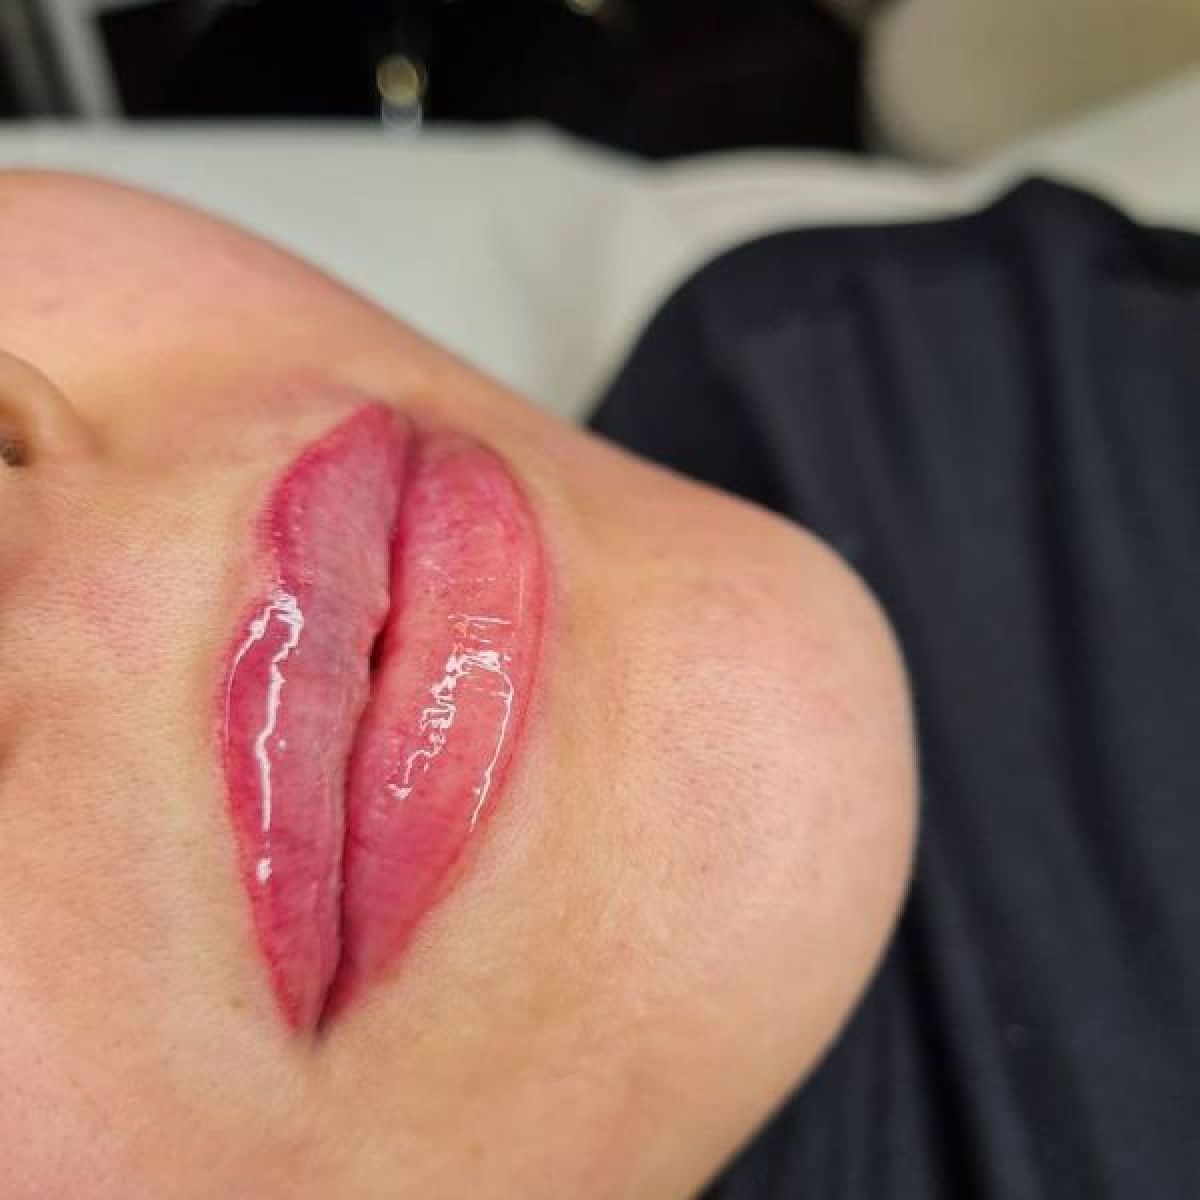 Maquillage permanent / Candy Lips à Senlis (60) Par Radia - Estheca